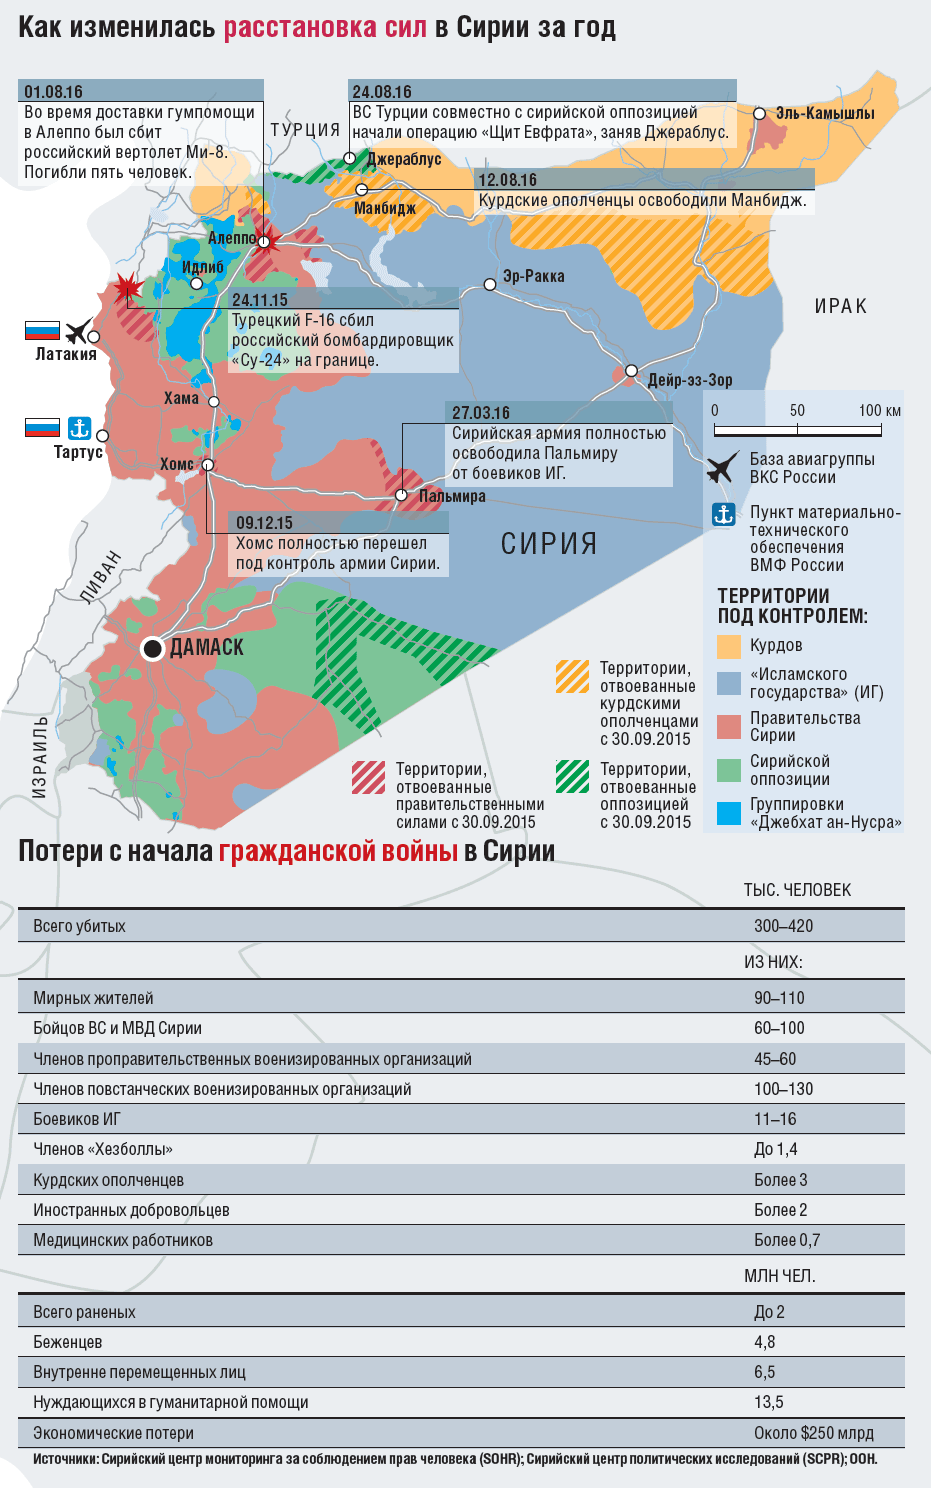 О российской операции в Сирии